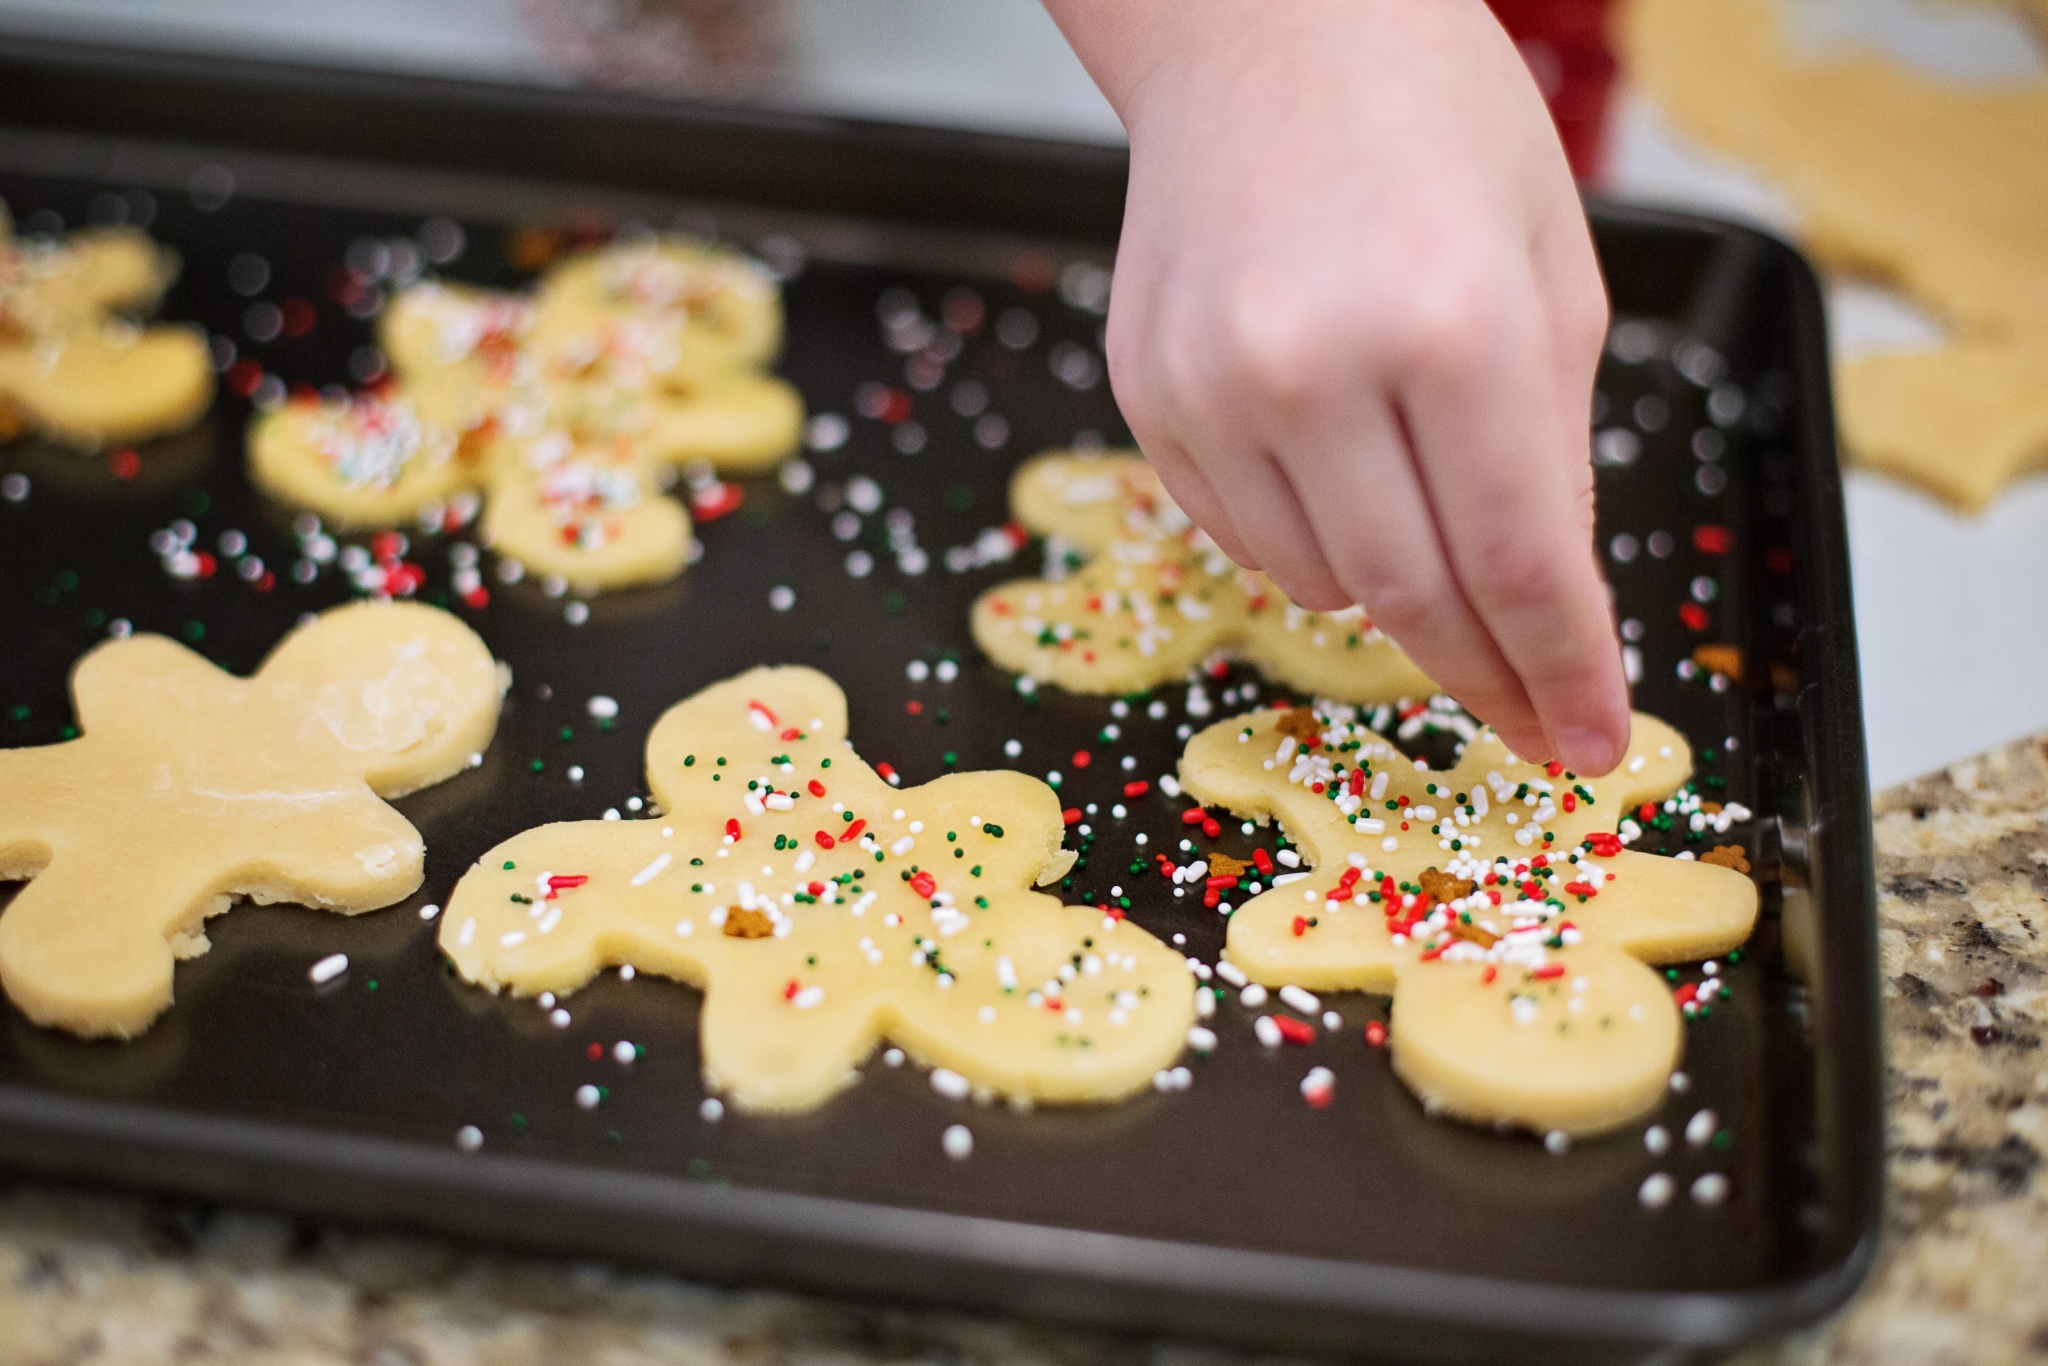 baking-christmas-cookies-12190.jpg